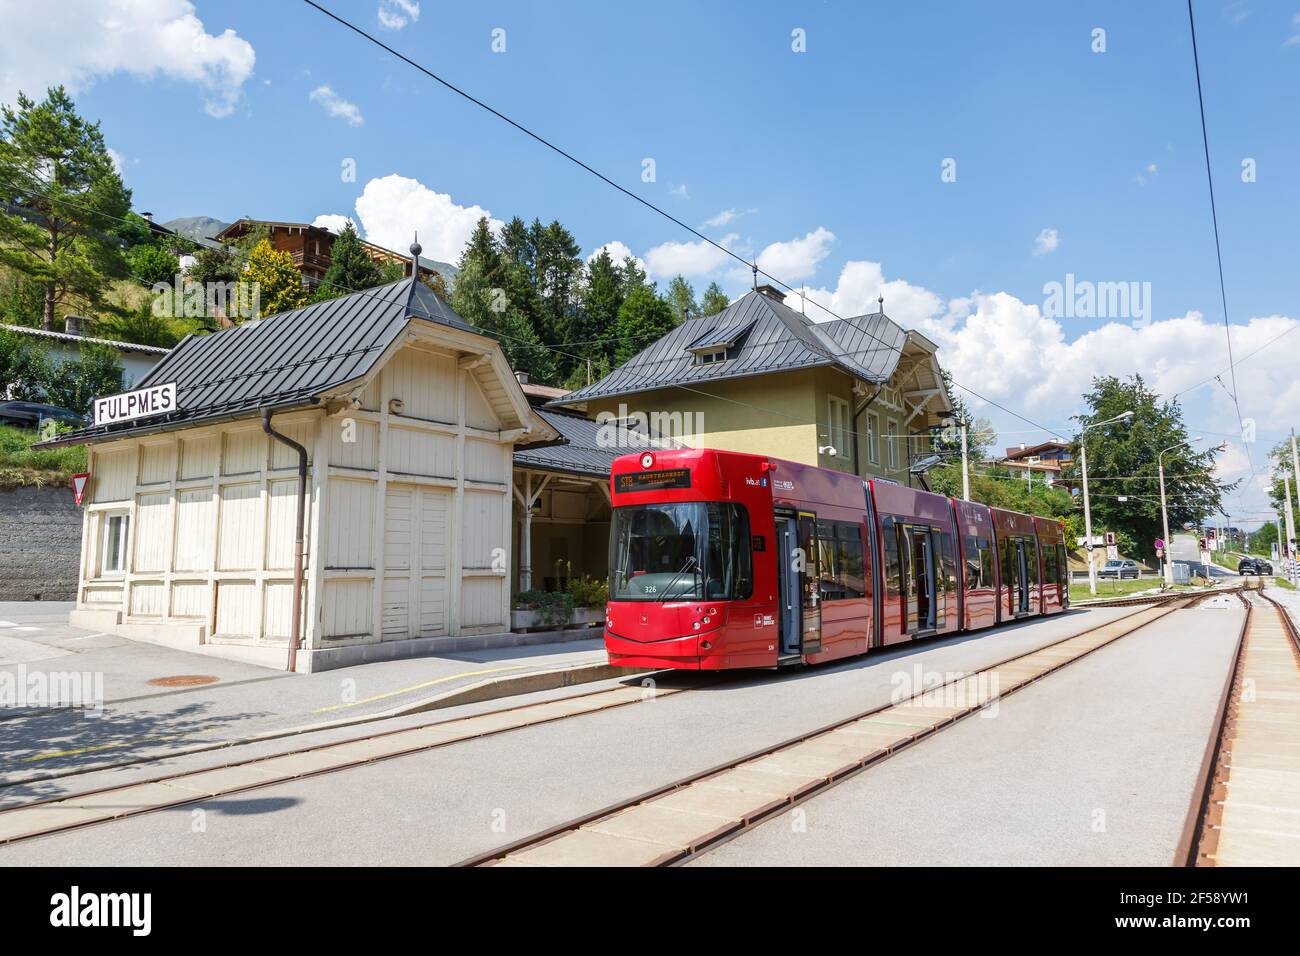 Fulpmes, Austria - August 1, 2020: Stubaitalbahn Innsbruck Tram train Fulpmes station in Austria. Stock Photo